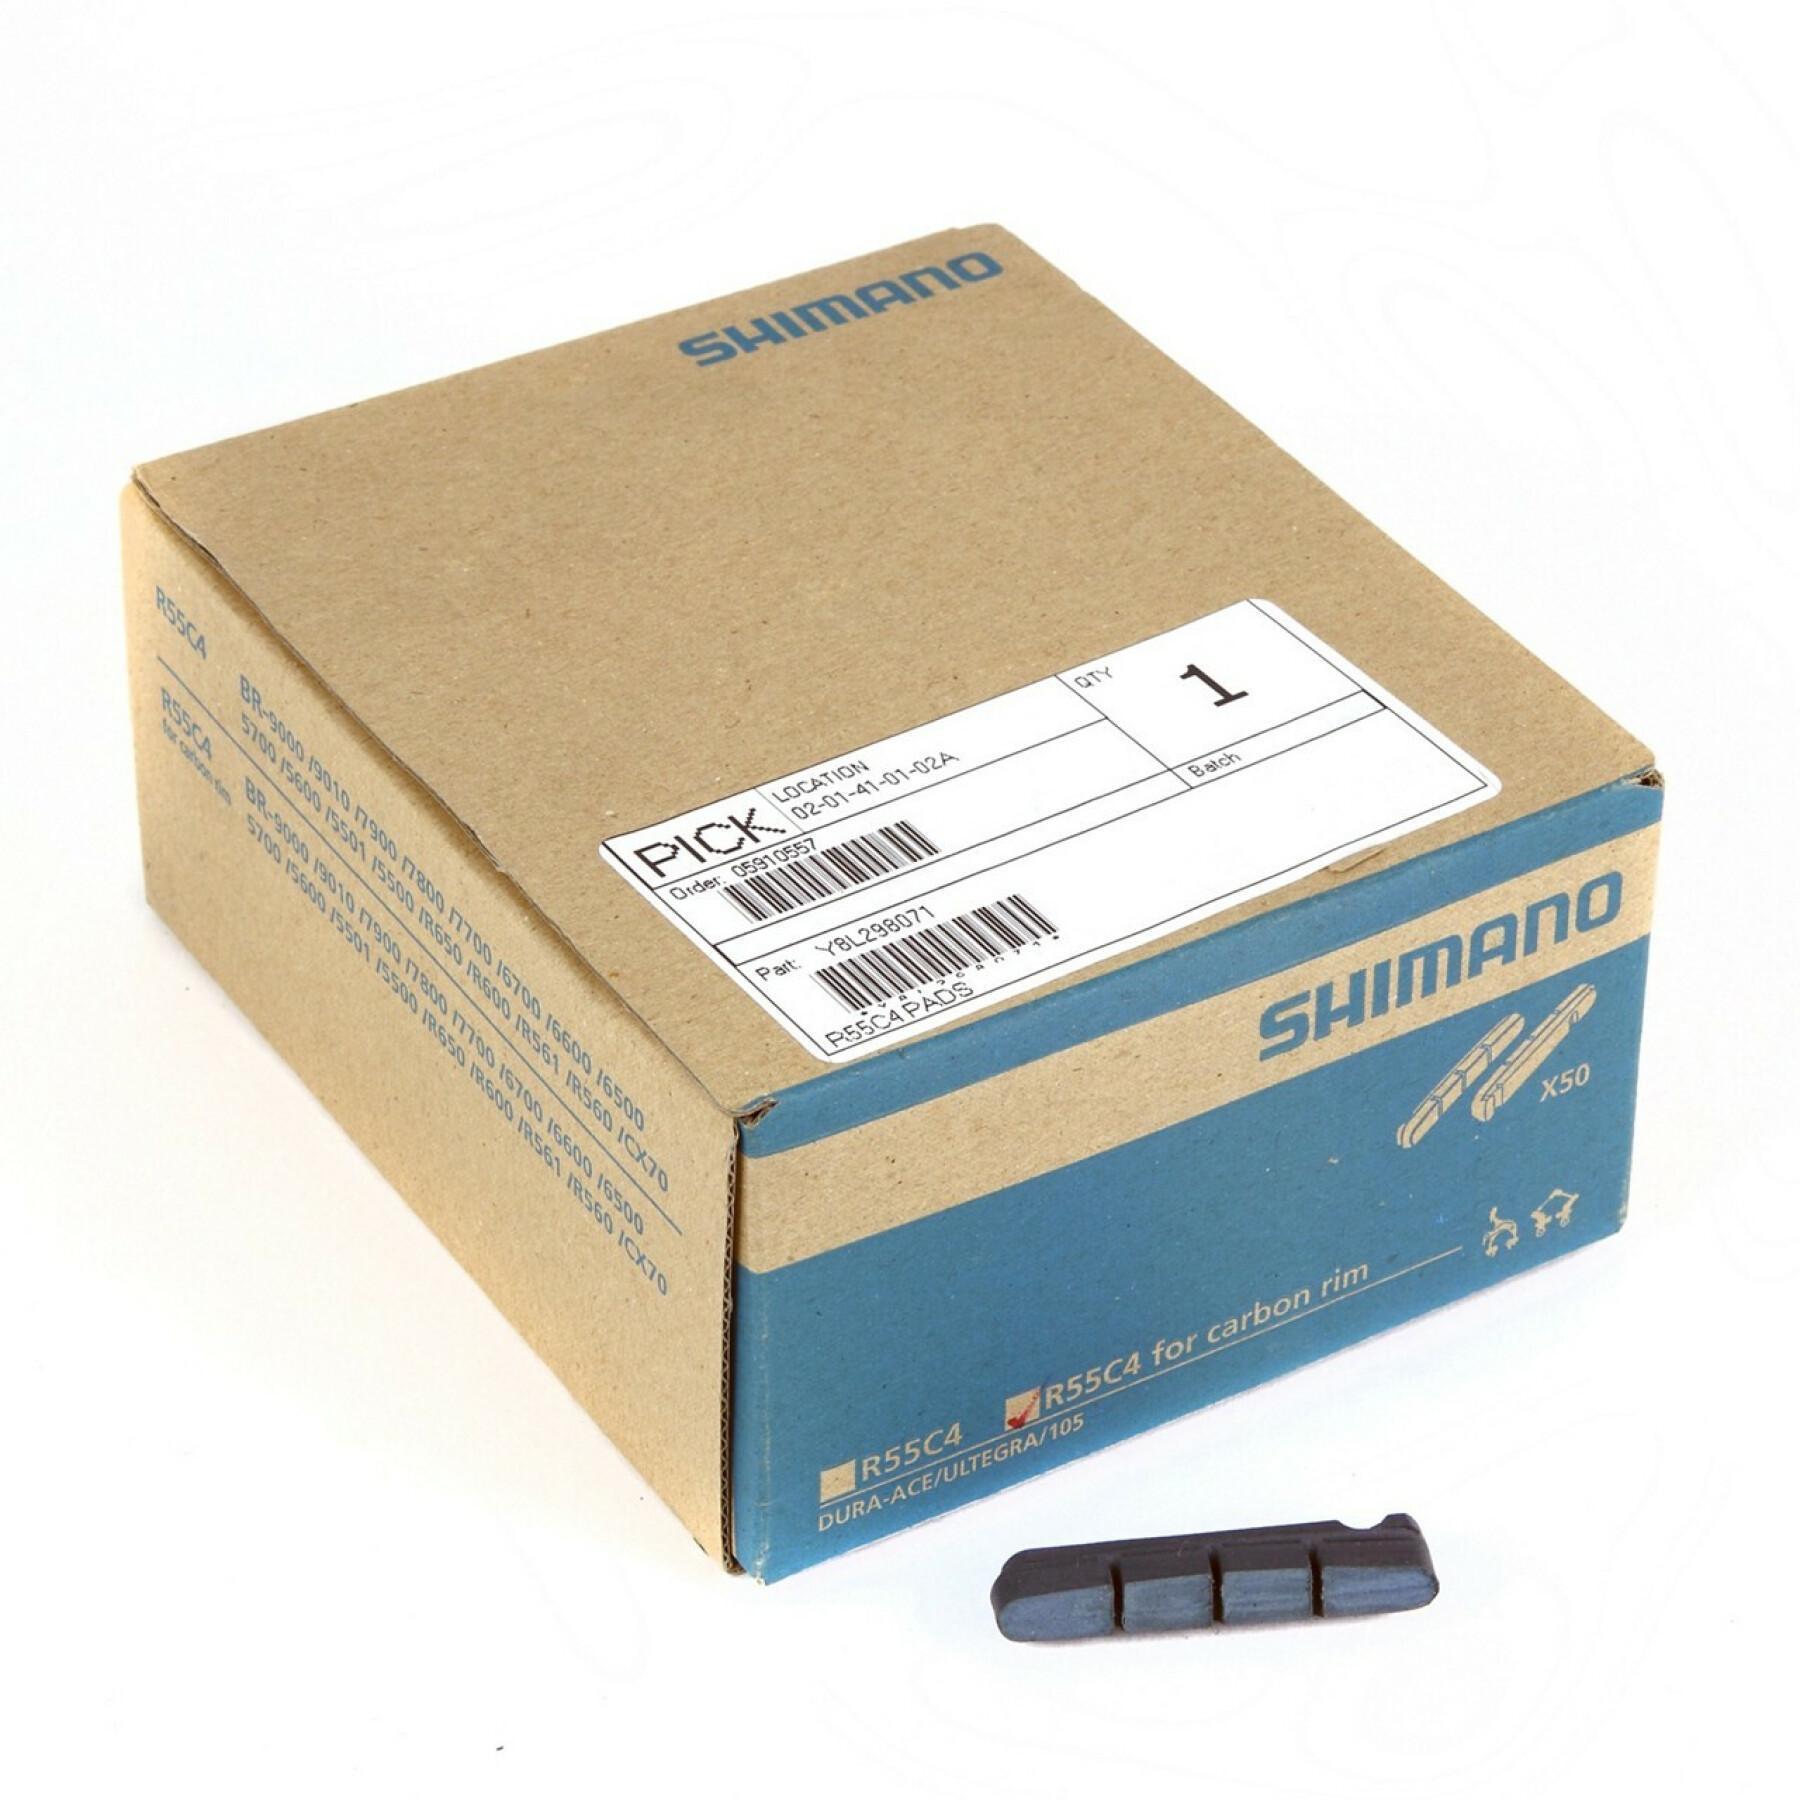 Paquete de 50 pares de pastillas de freno de carbono para carretera Shimano R55C4